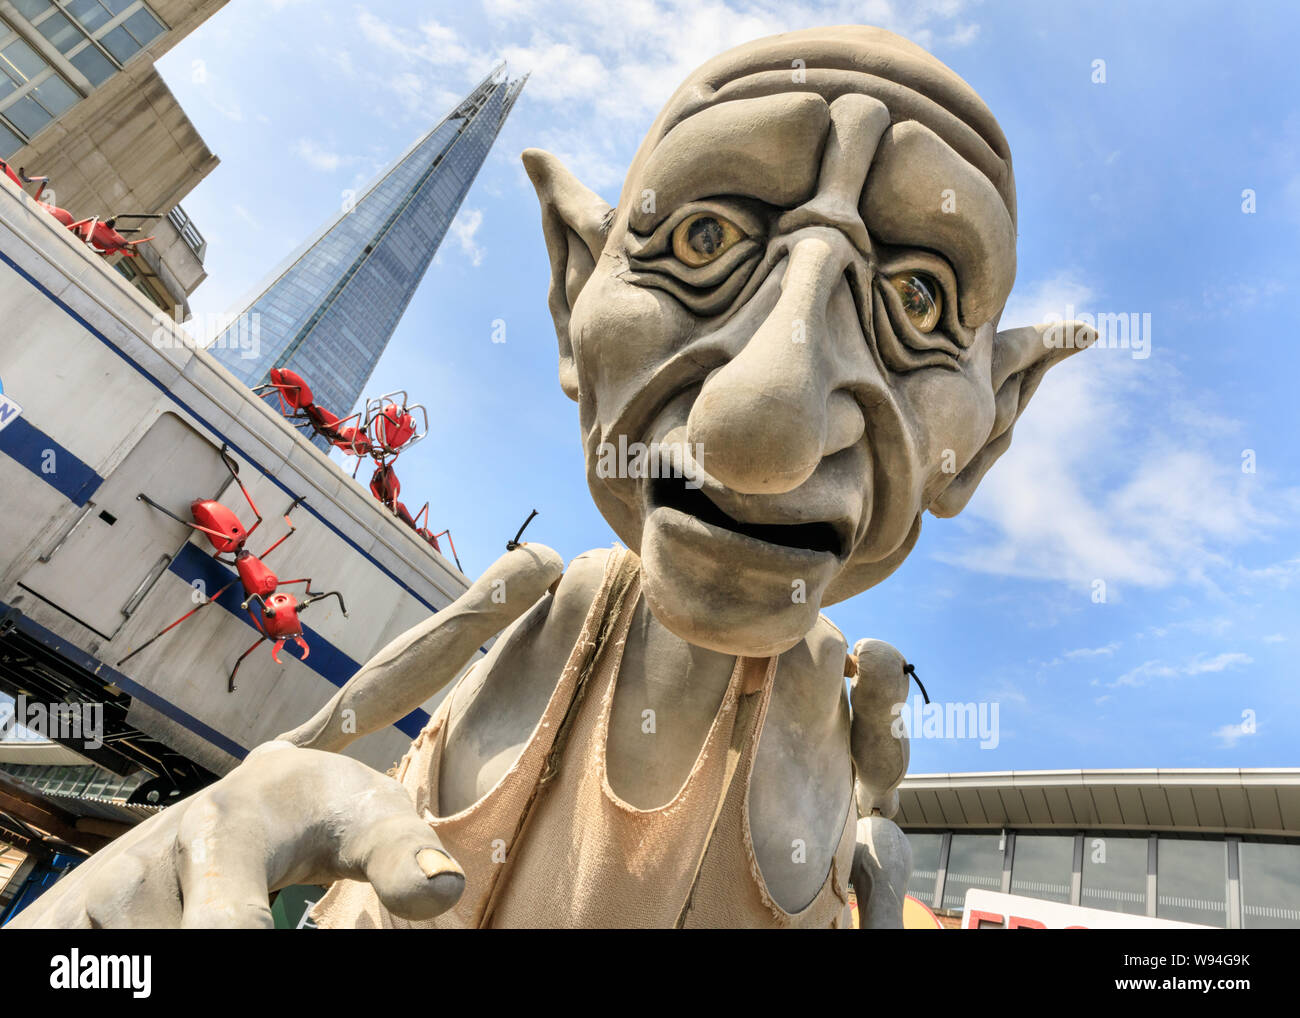 Gnomus, gardien de la terre, un doux géant géant vert avec des Marionnettes Marionnettes par 'courage' les marionnettistes, performance en dehors près du Shard, London, UK Banque D'Images